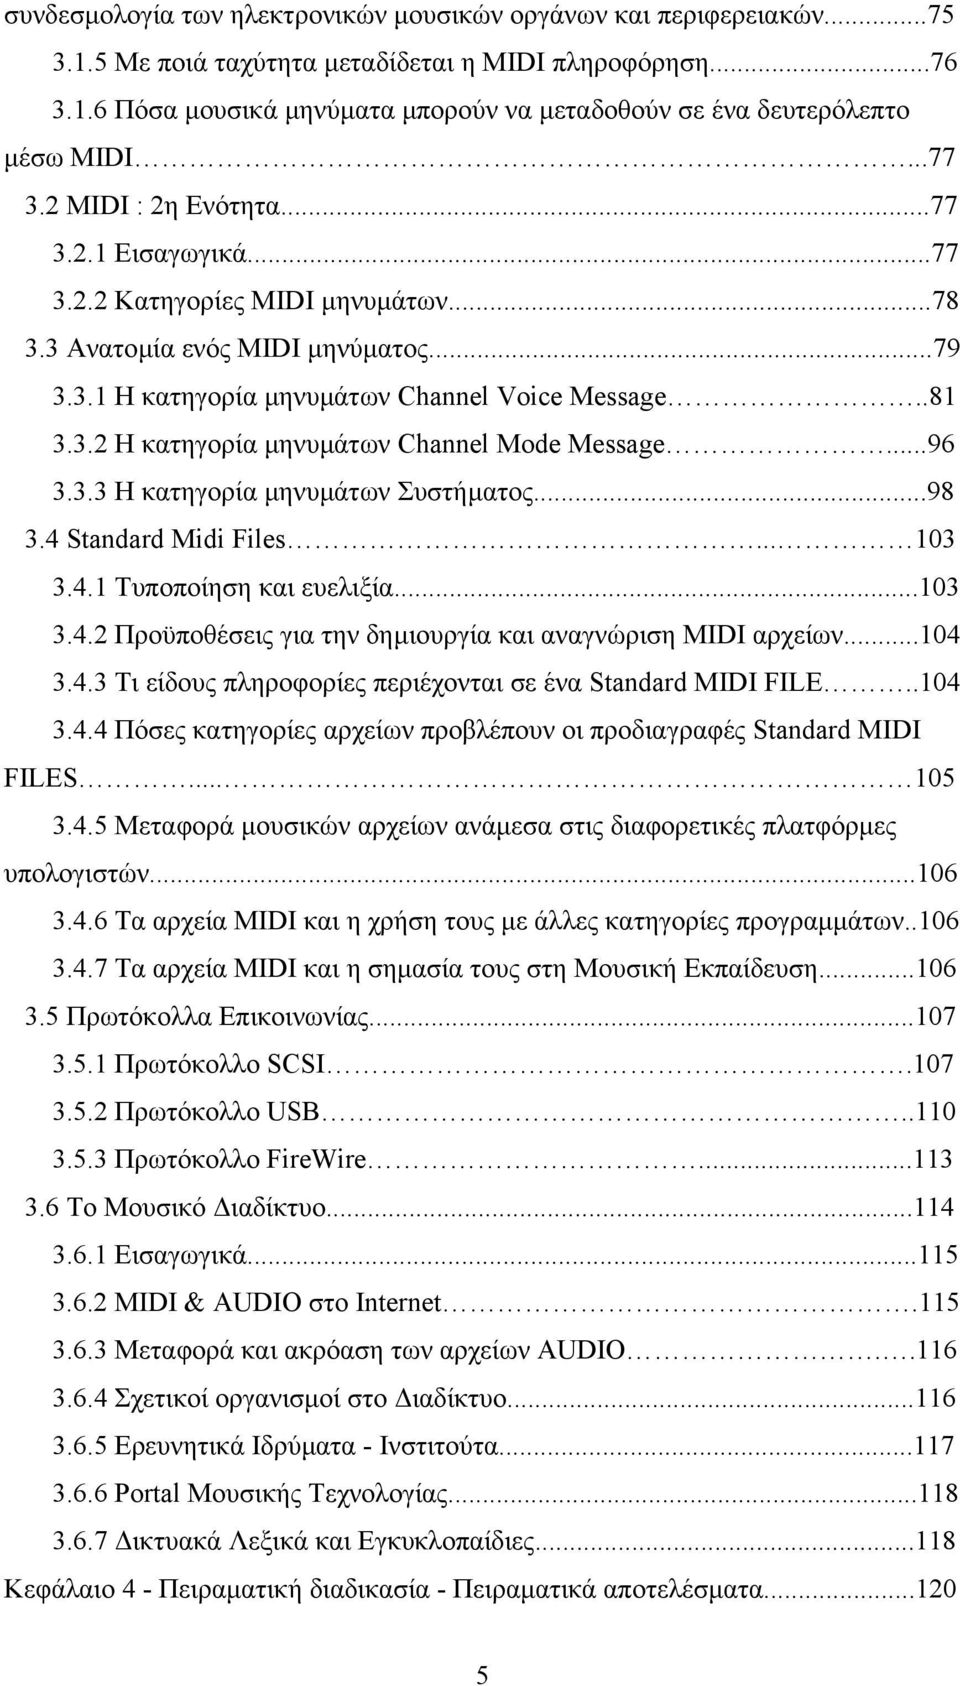 ..96 3.3.3 Η κατηγορία µηνυµάτων Συστήµατος...98 3.4 Standard Midi Files... 103 3.4.1 Τυποποίηση και ευελιξία...103 3.4.2 Προϋποθέσεις για την δηµιουργία και αναγνώριση MIDI αρχείων...104 3.4.3 Τι είδους πληροφορίες περιέχονται σε ένα Standard MIDI FILE.